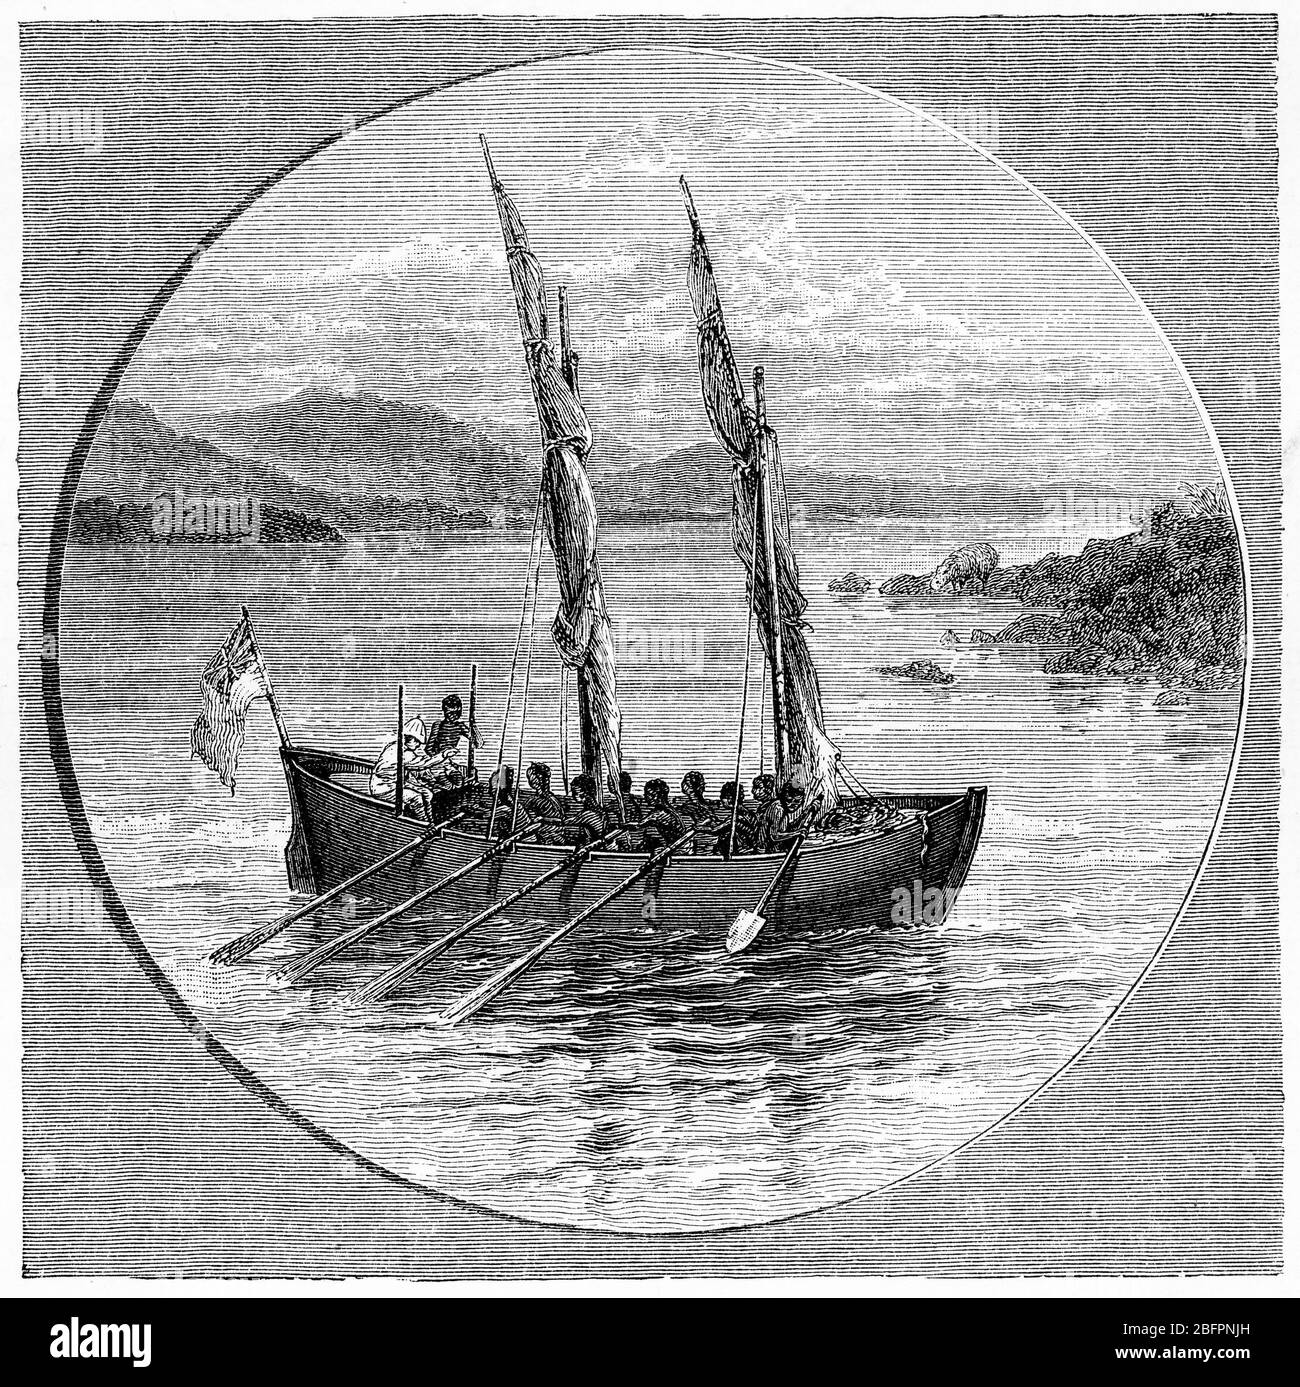 Incisione di nativi del Congo in Africa lancio di una barca missionaria, la Plymouth, circa 1880 Foto Stock